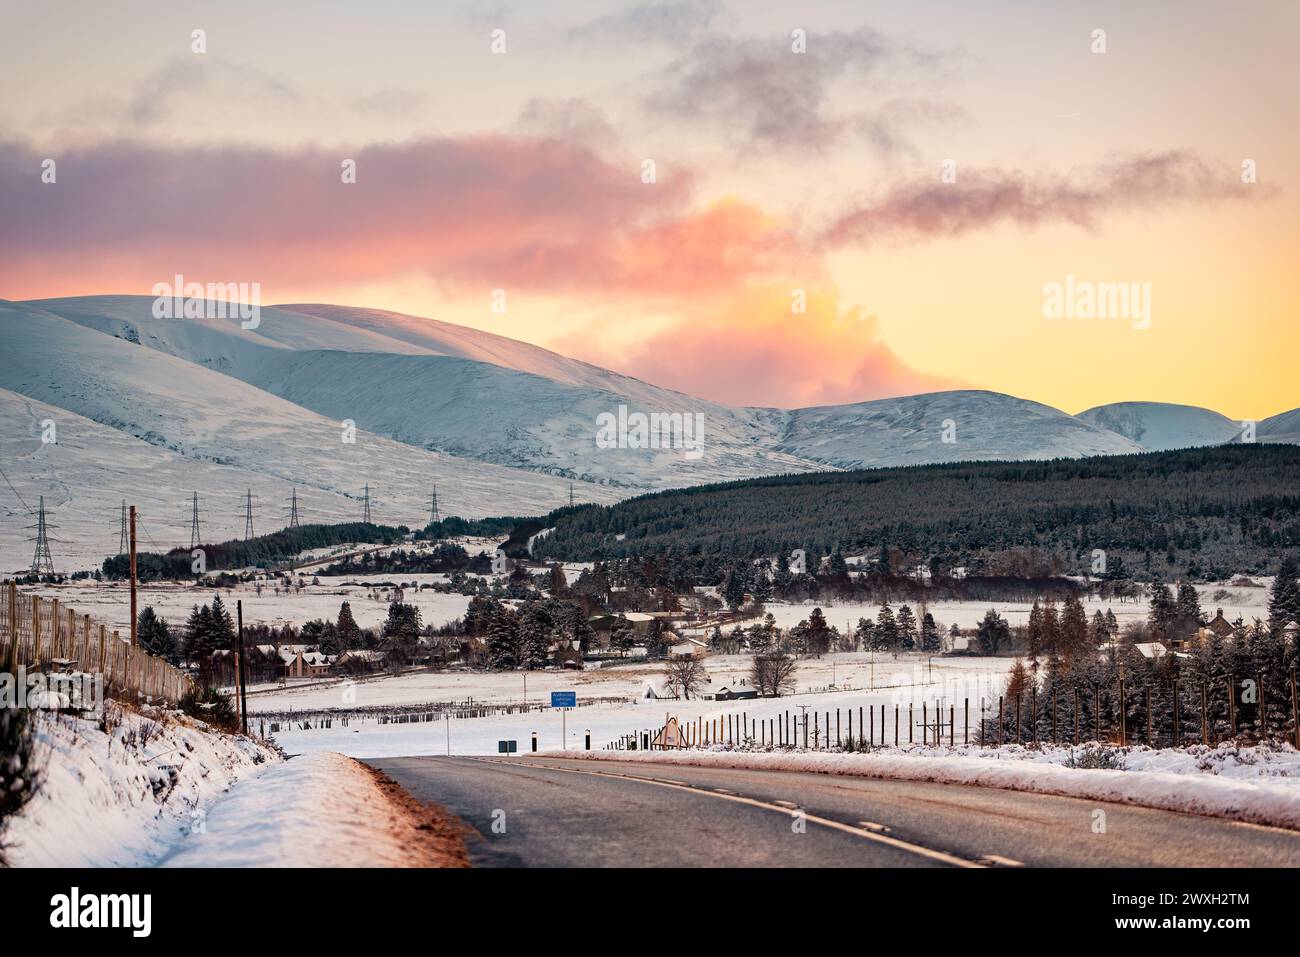 Le village de Dalwhinnie en Écosse, sur fond de montagnes enneigées sous un coucher de soleil rose Banque D'Images